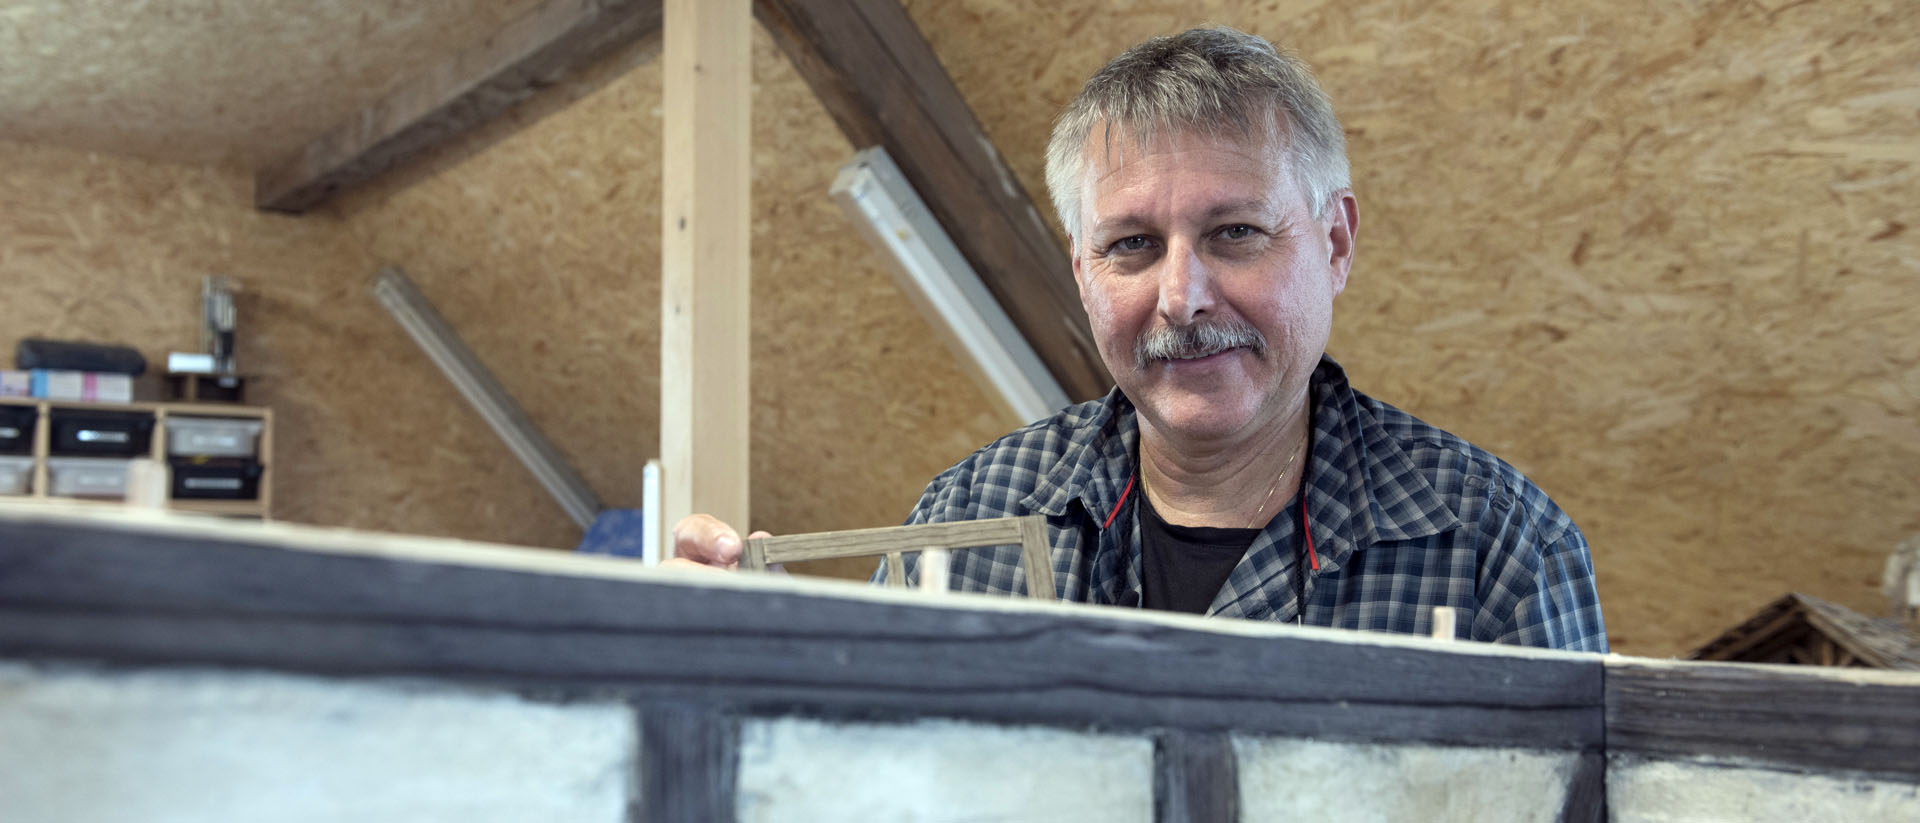 Daniel Kühnis et les membres de son association ont construit de nombreuses crèches | © Ueli Abt